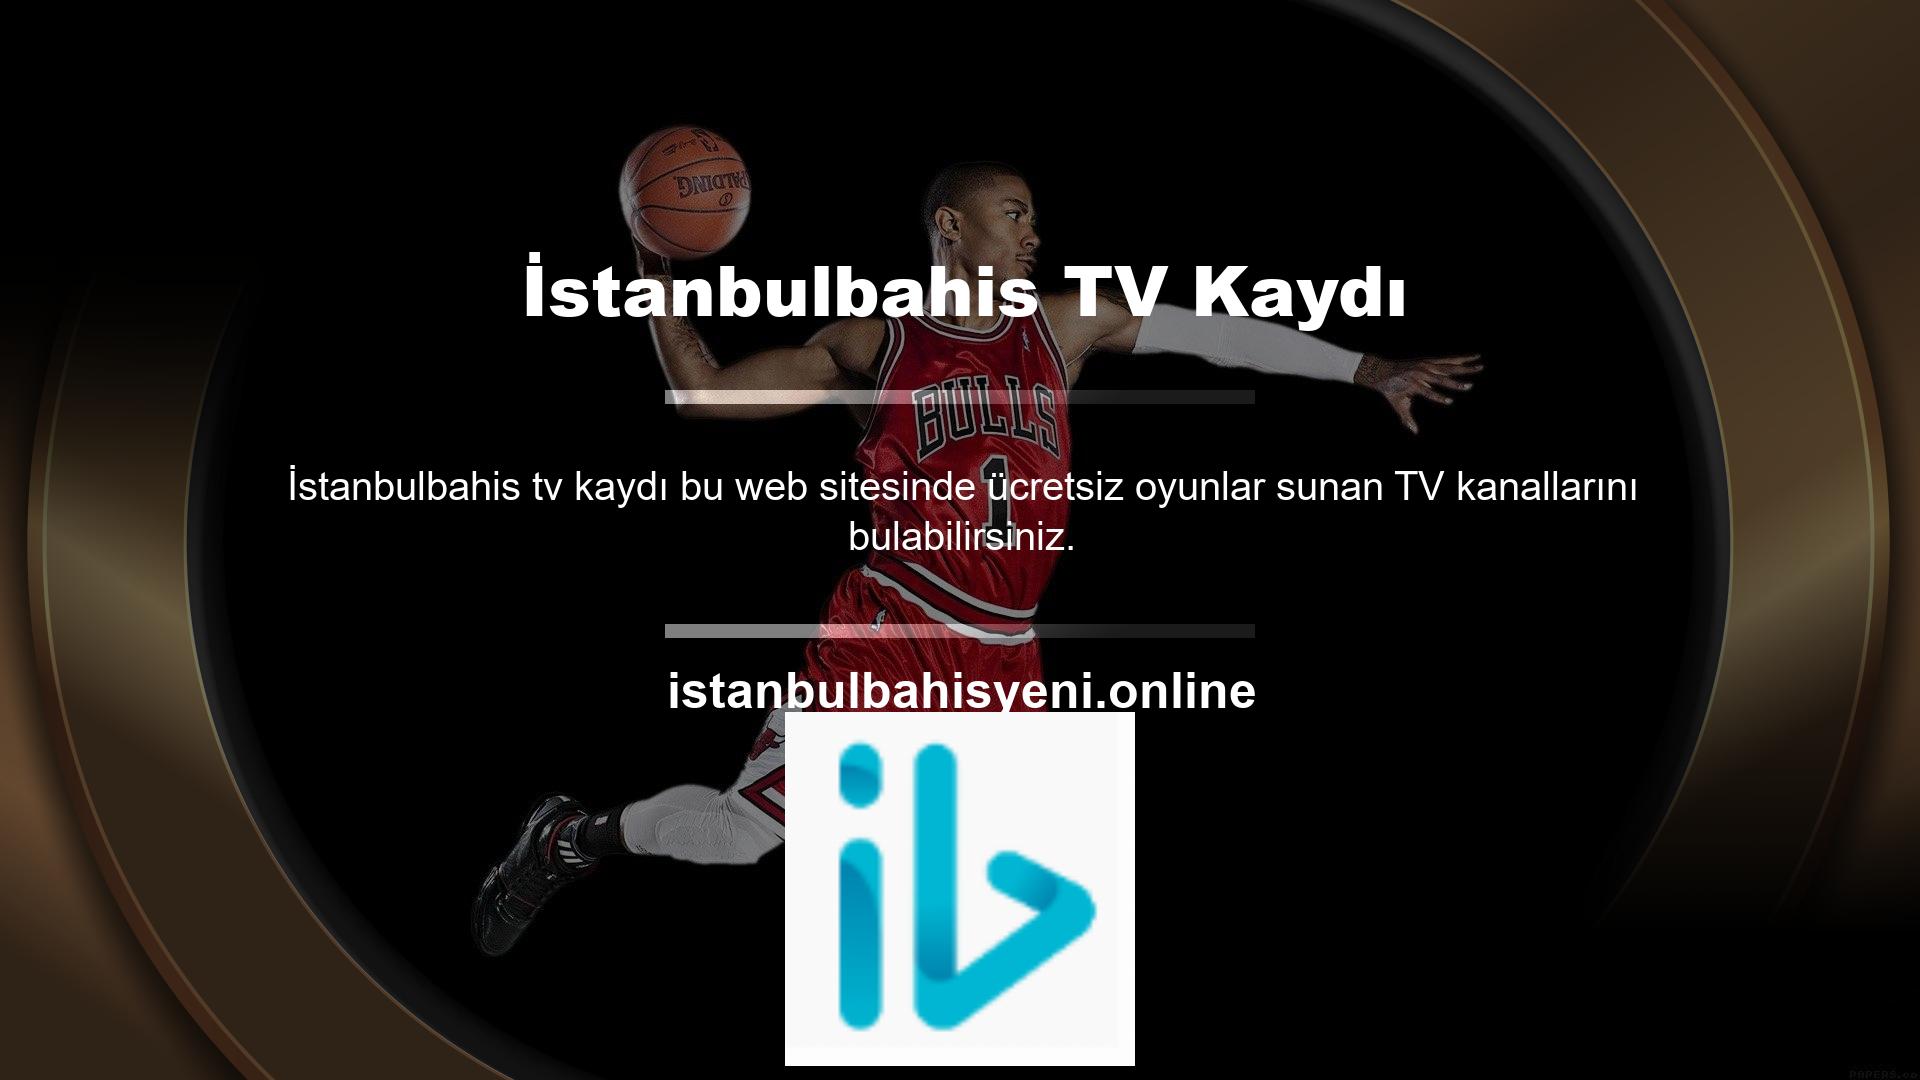 İstanbulbahis TV giriş seçeneklerine baktığınızda tek giriş sonrasında aktif olan bir sayfa göreceksiniz